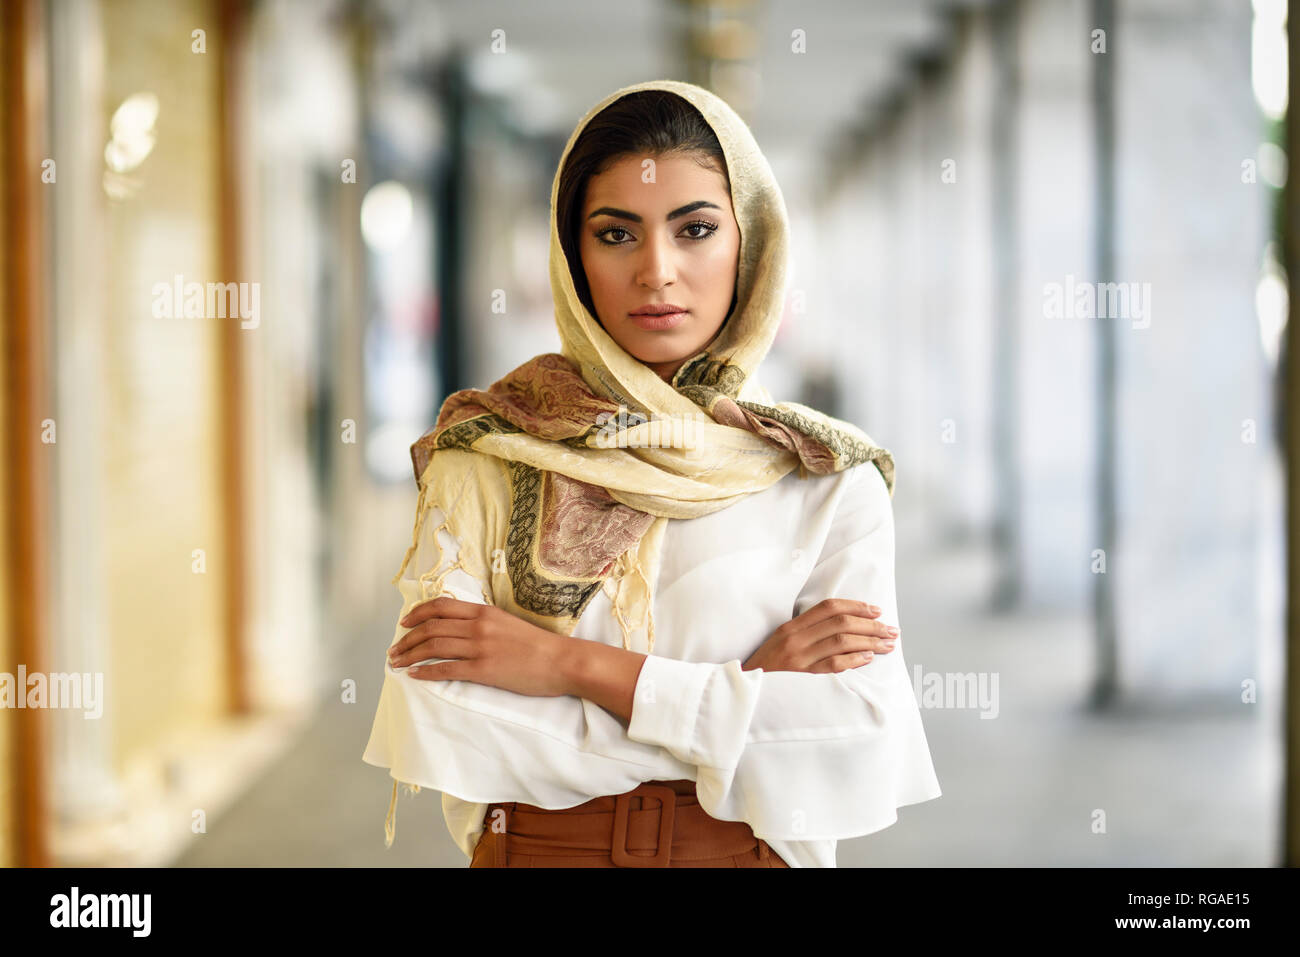 Spanien, Granada, junge muslimische touristische Frau mit Kopftuch in städtischen Stadt Hintergrund Stockfoto